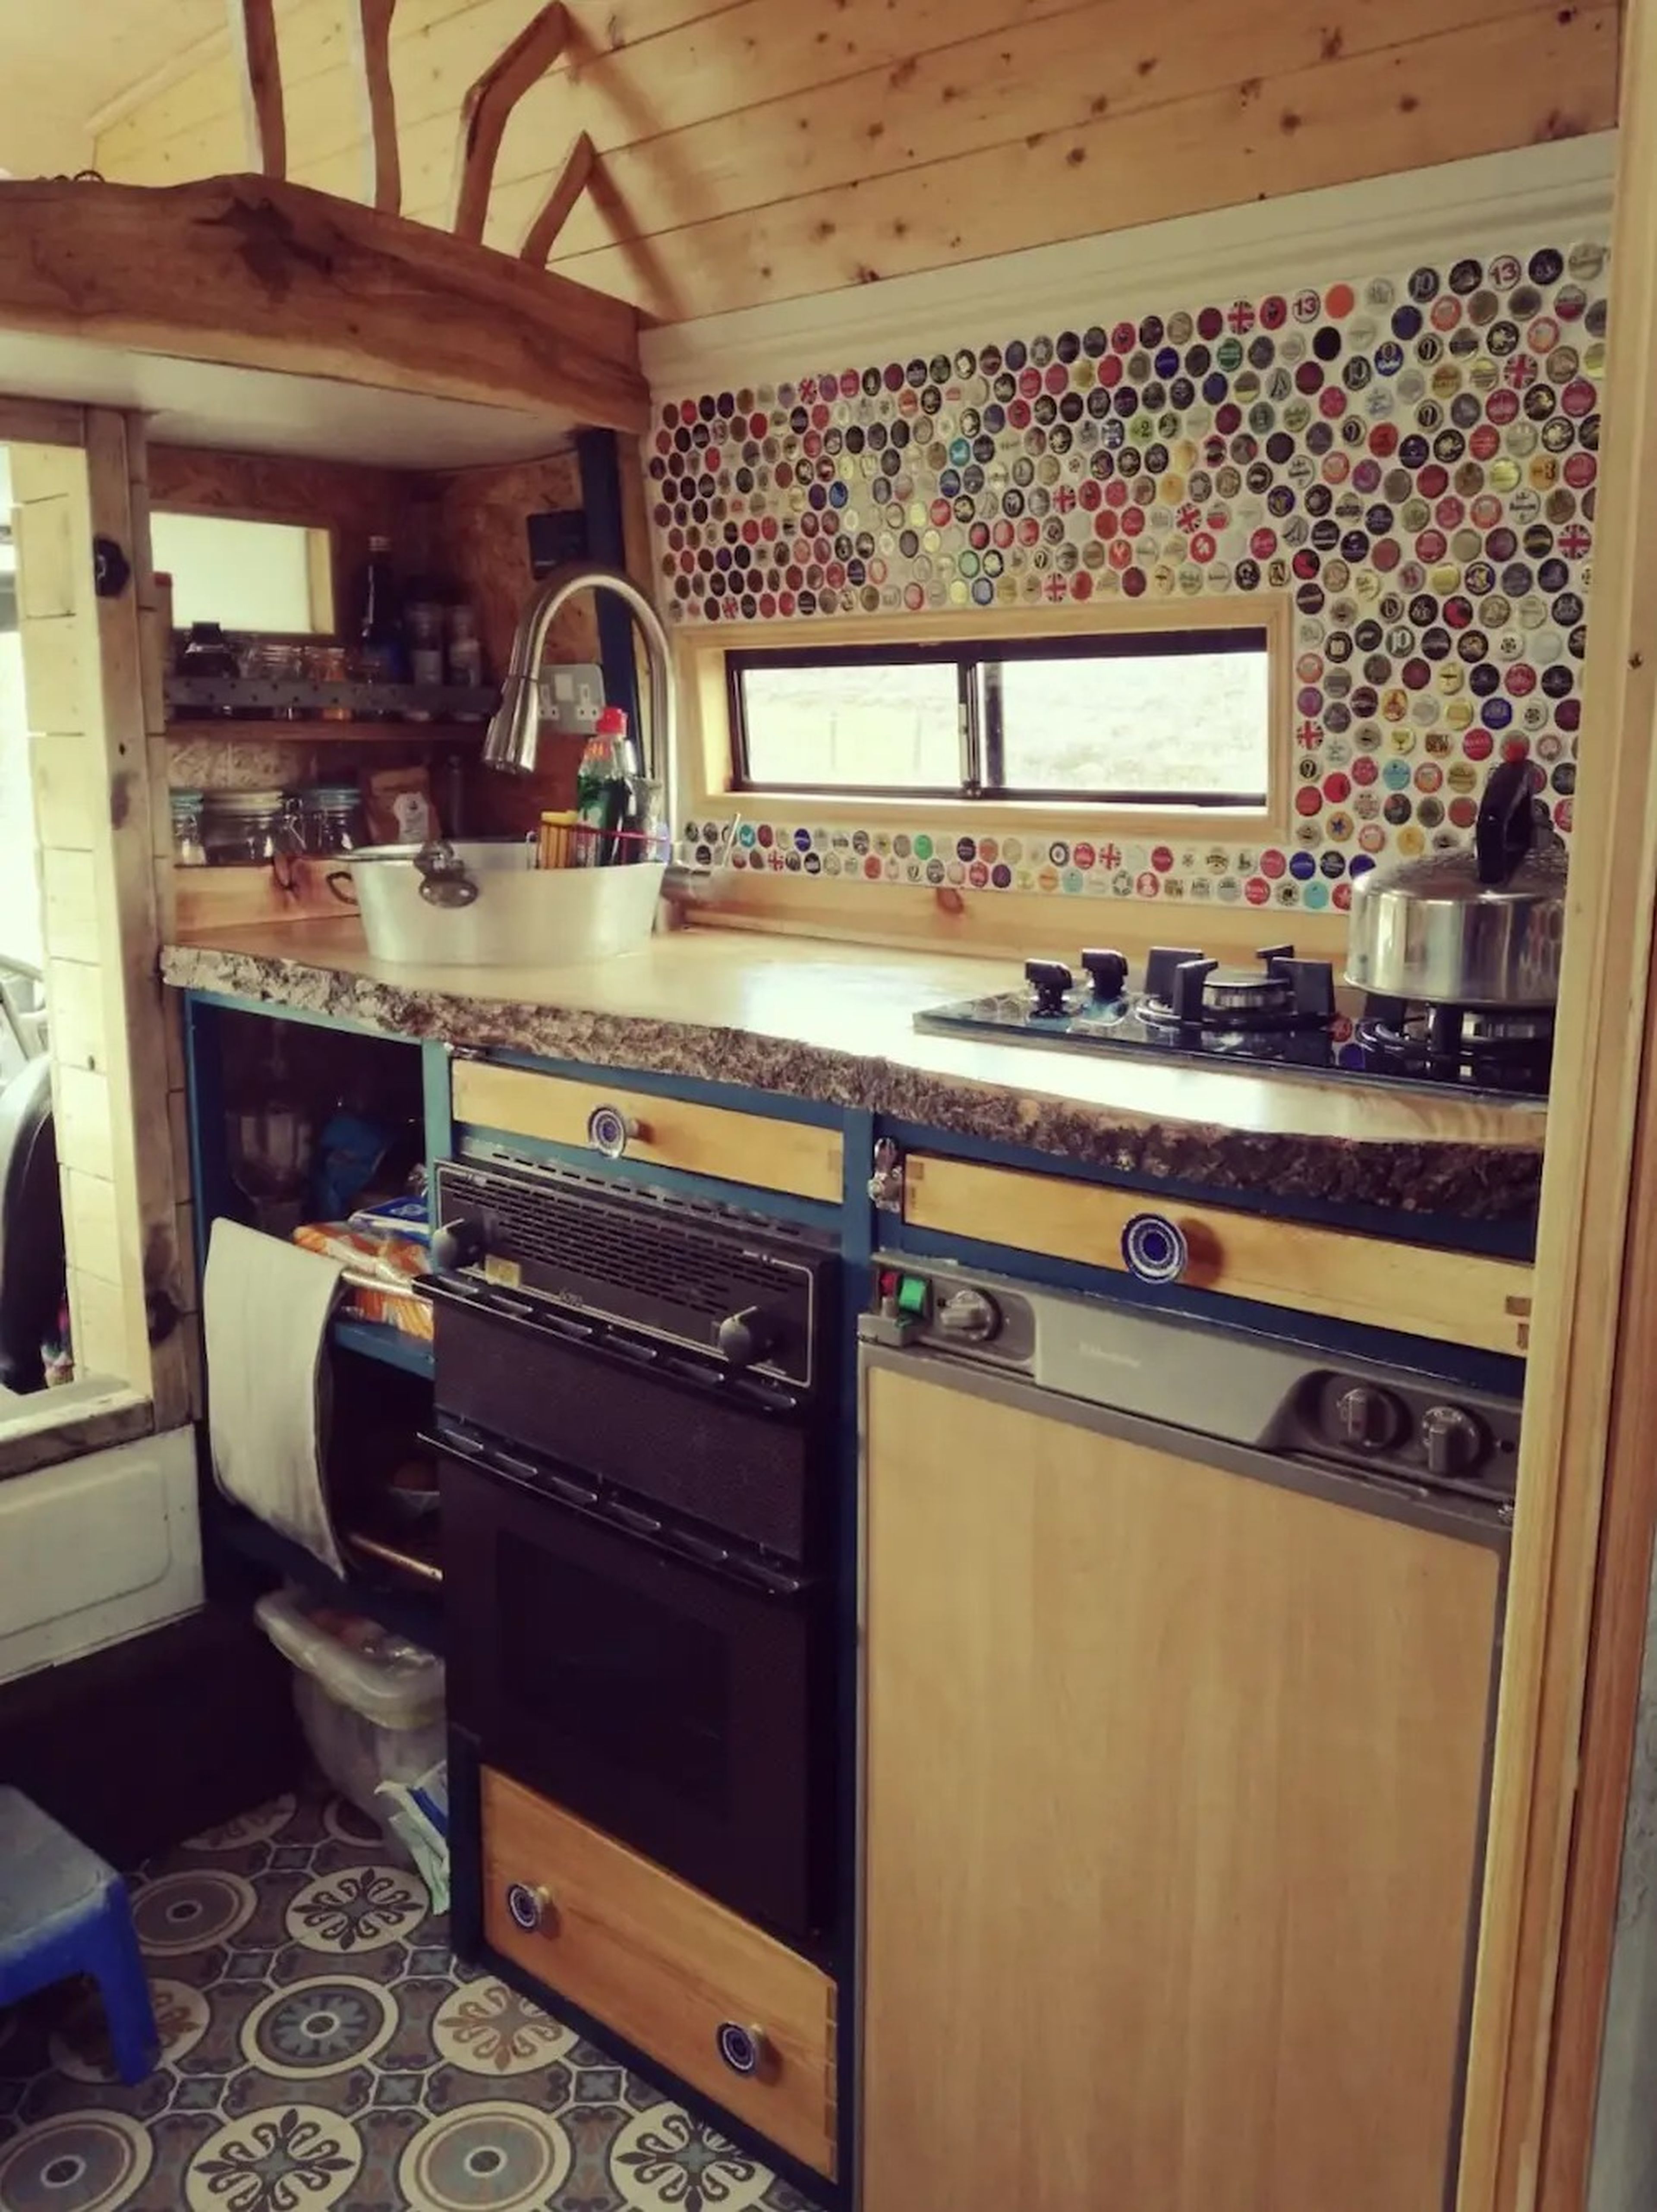 La cocina está decorada con azulejos y cuenta con horno a gas y fogones.